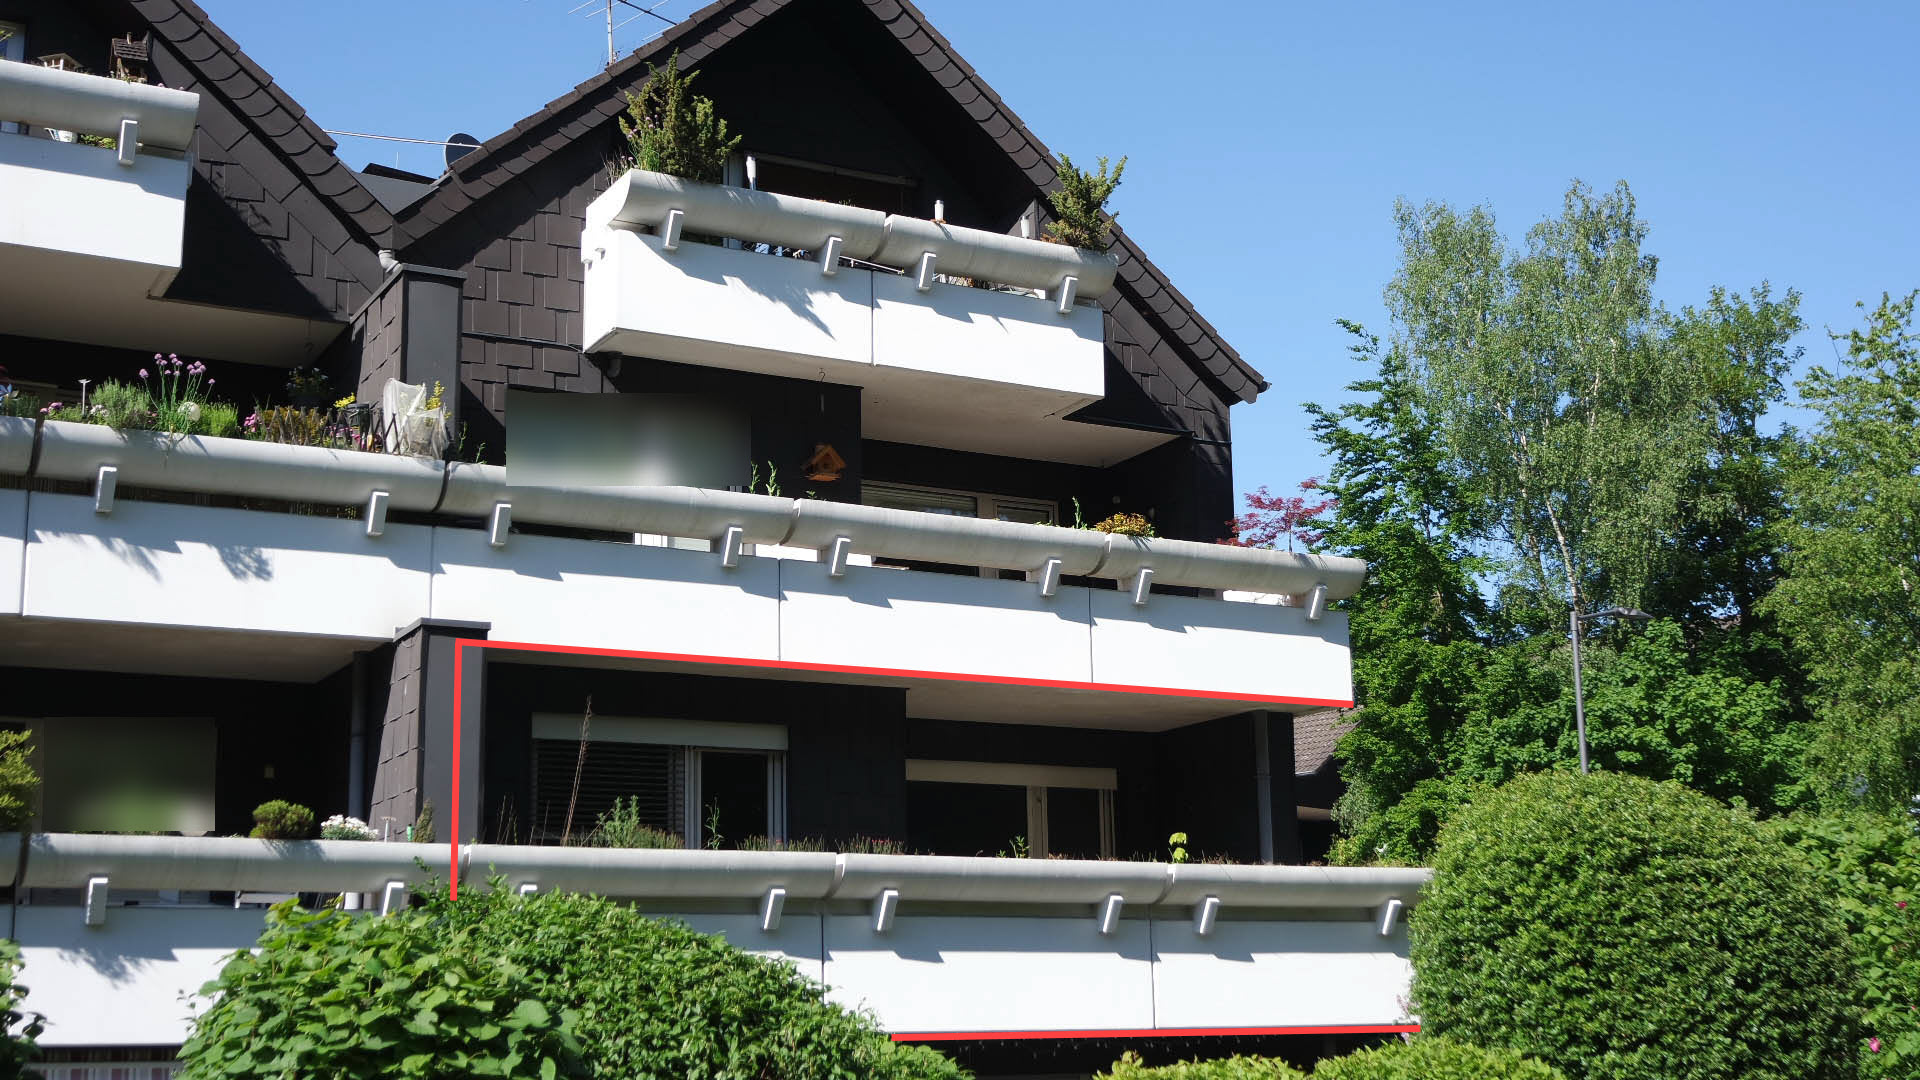 GM-Dieringhausen: ETW mit 16 m² großem Balkon, Balkon ist nicht einsehbar und ganz überdacht  